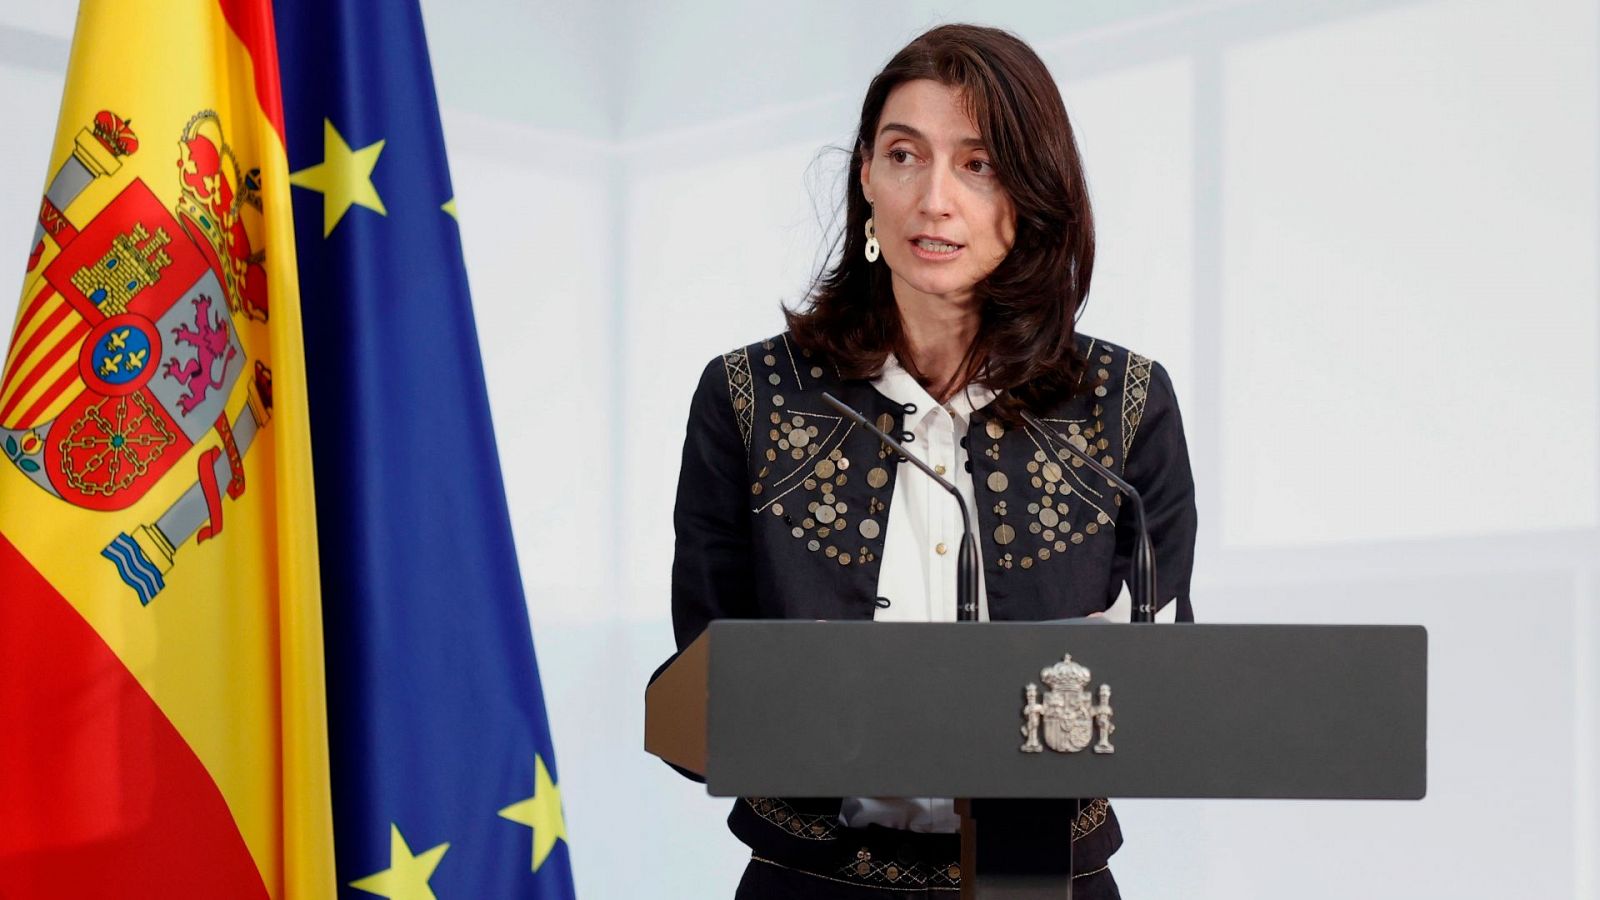 La ministra de Justicia defiende el estado de alarma: "El deber del Gobierno era tomar medidas inmediatas"